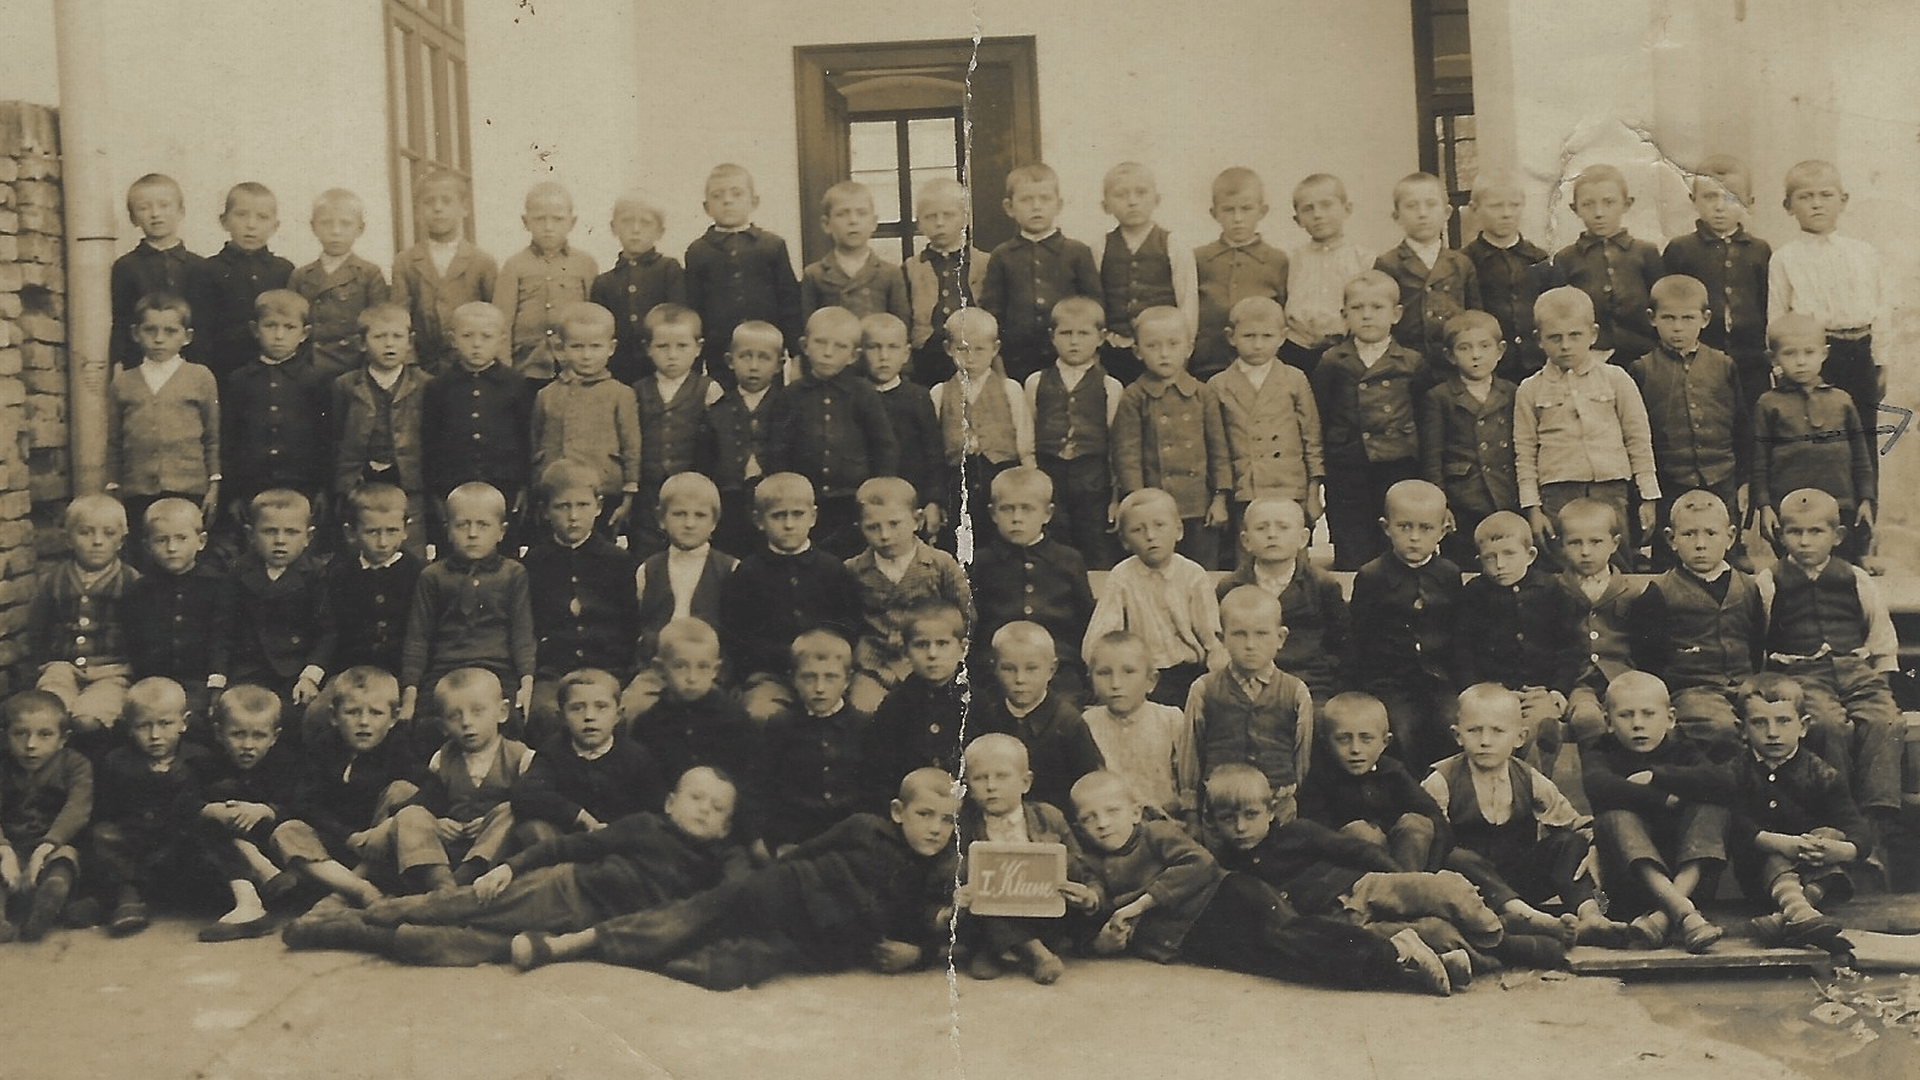 Jahrgang 1922, die 1. Klasse mit 74 Schülern. Foto: Archiv Arme Schulschwestern